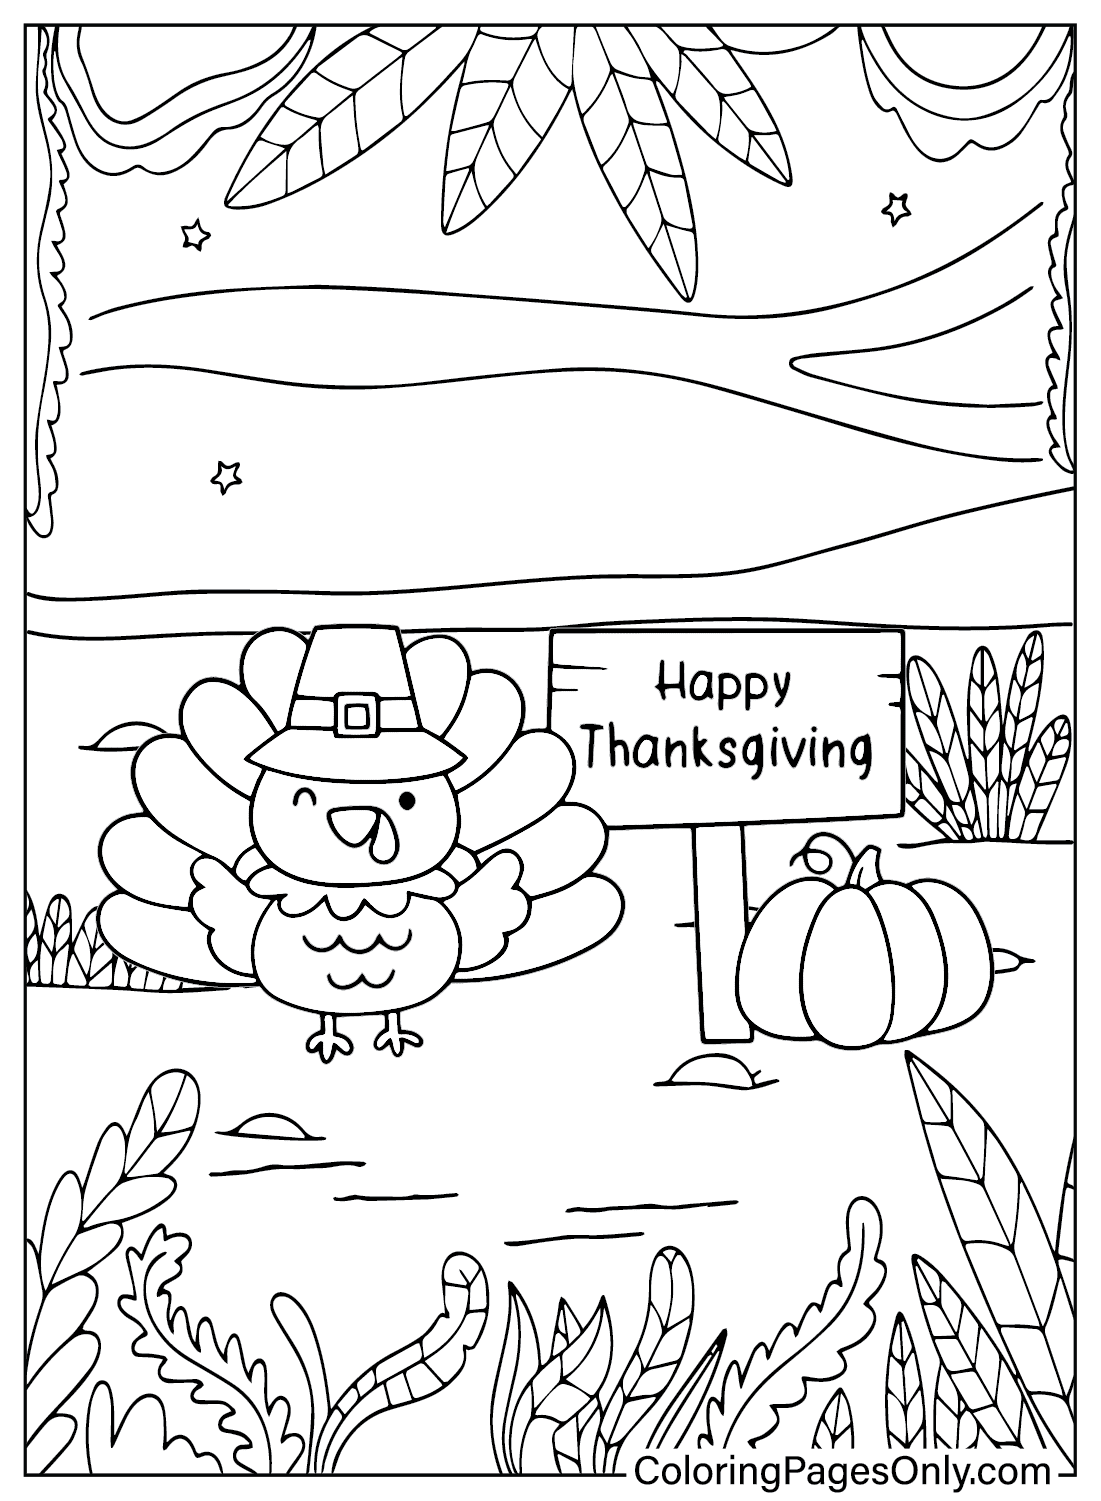 Página para colorear de Acción de Gracias de Turquía